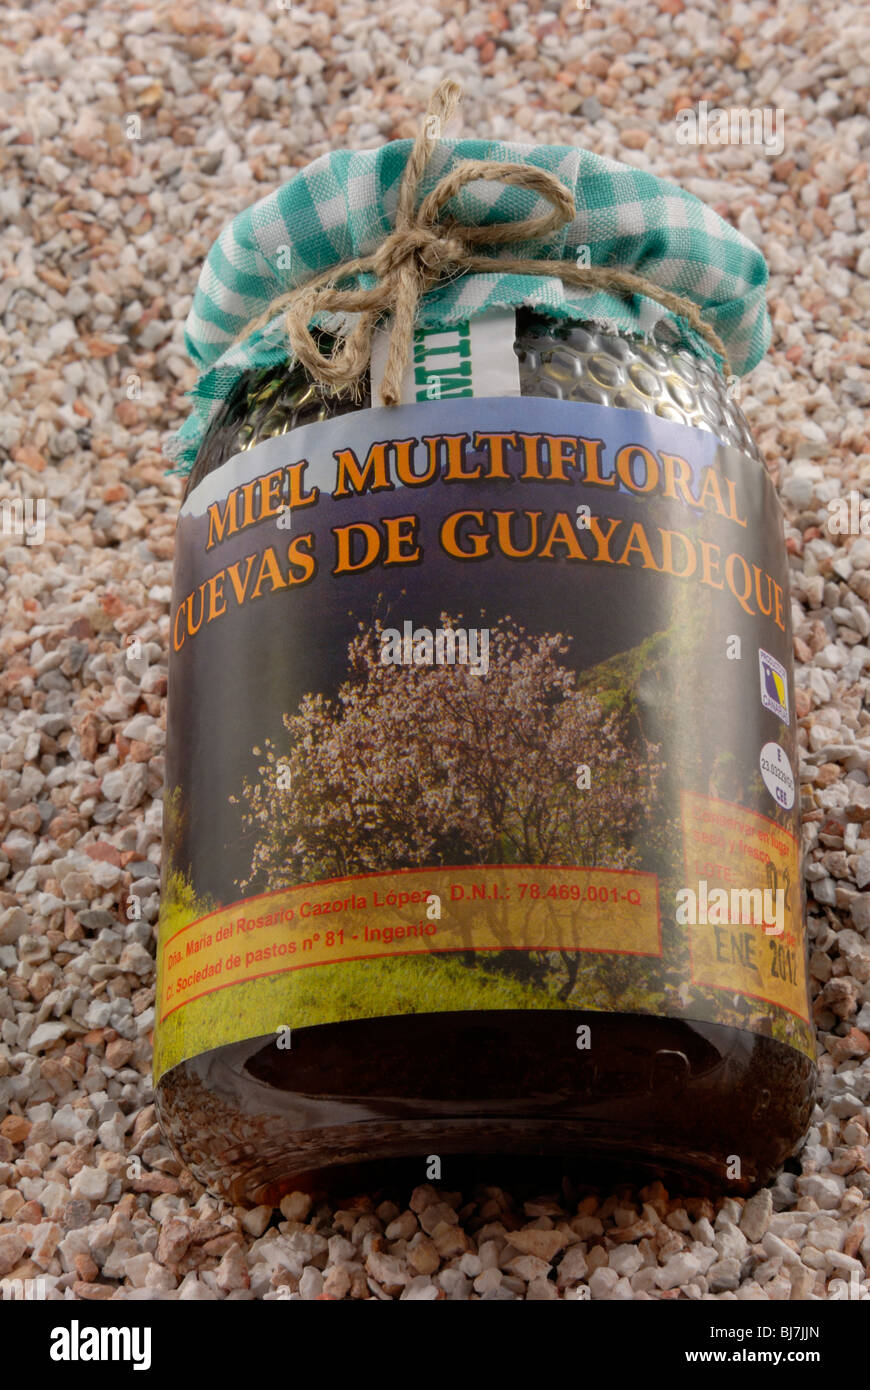 A jar of Miel Multifloral Cuevas de Guayadeque, Flower Honey from Guayadeque Ravine. Barranco de Guayadeque, Guayadeque Ravine, Stock Photo